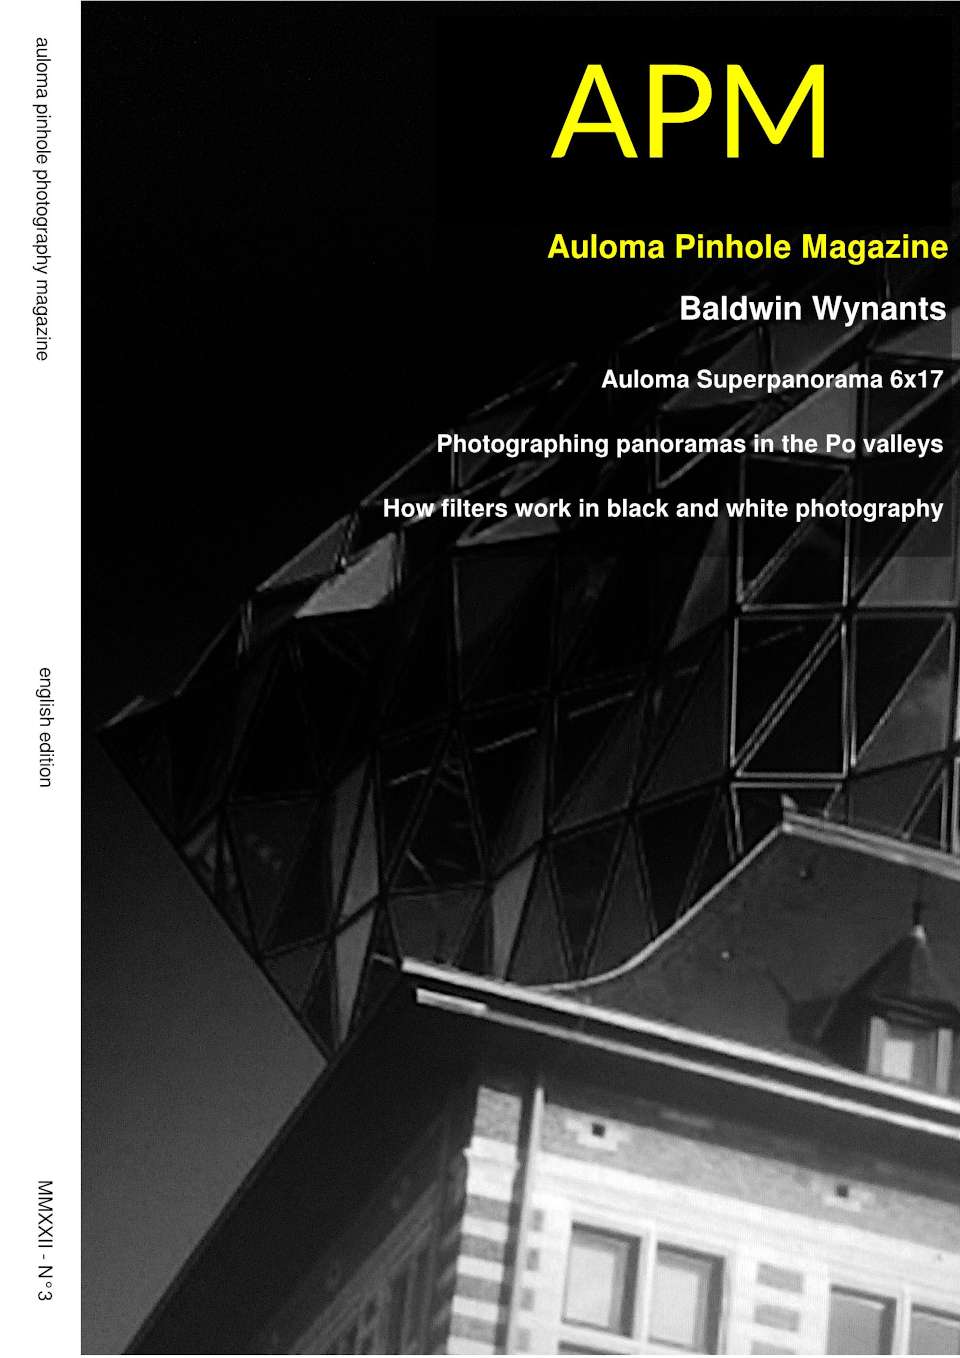 APM auloma pinhole magazine